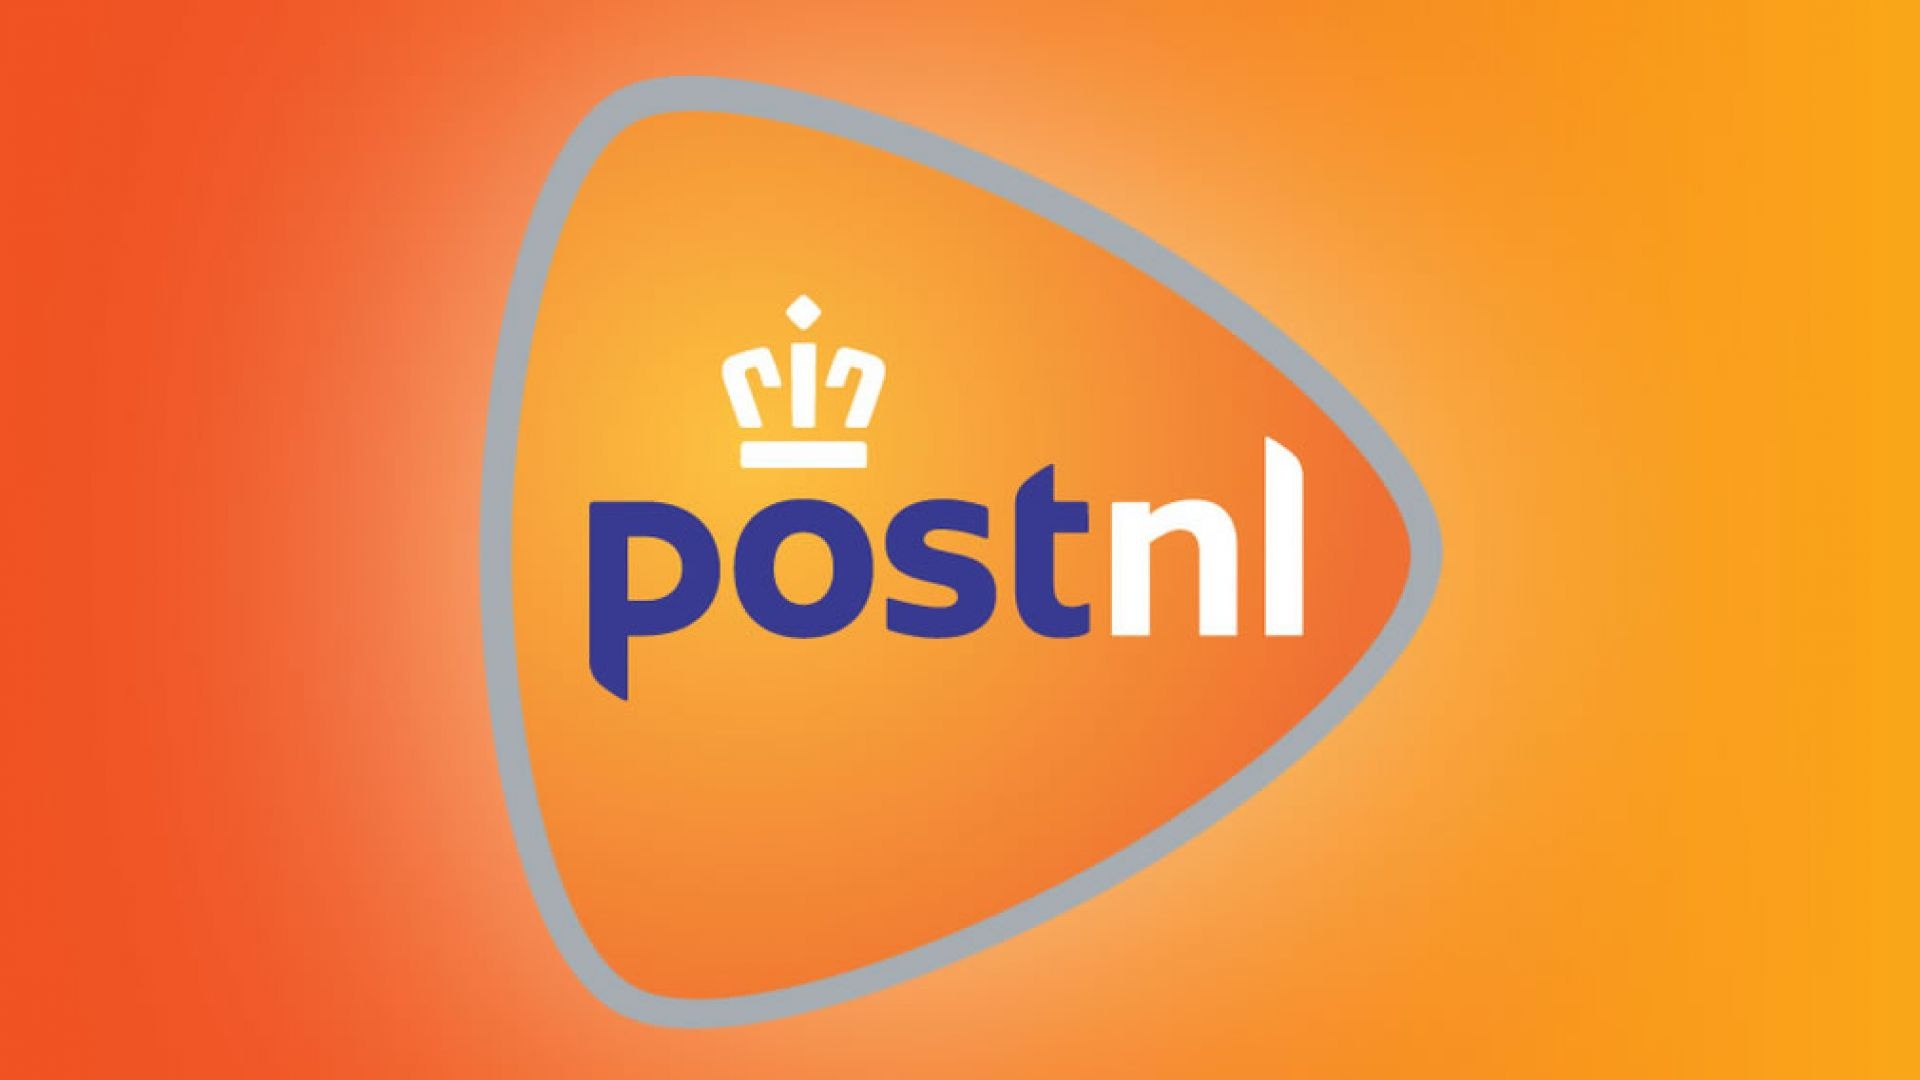 Aandeelhouder zet PostNL een hak om afwijzen bpost